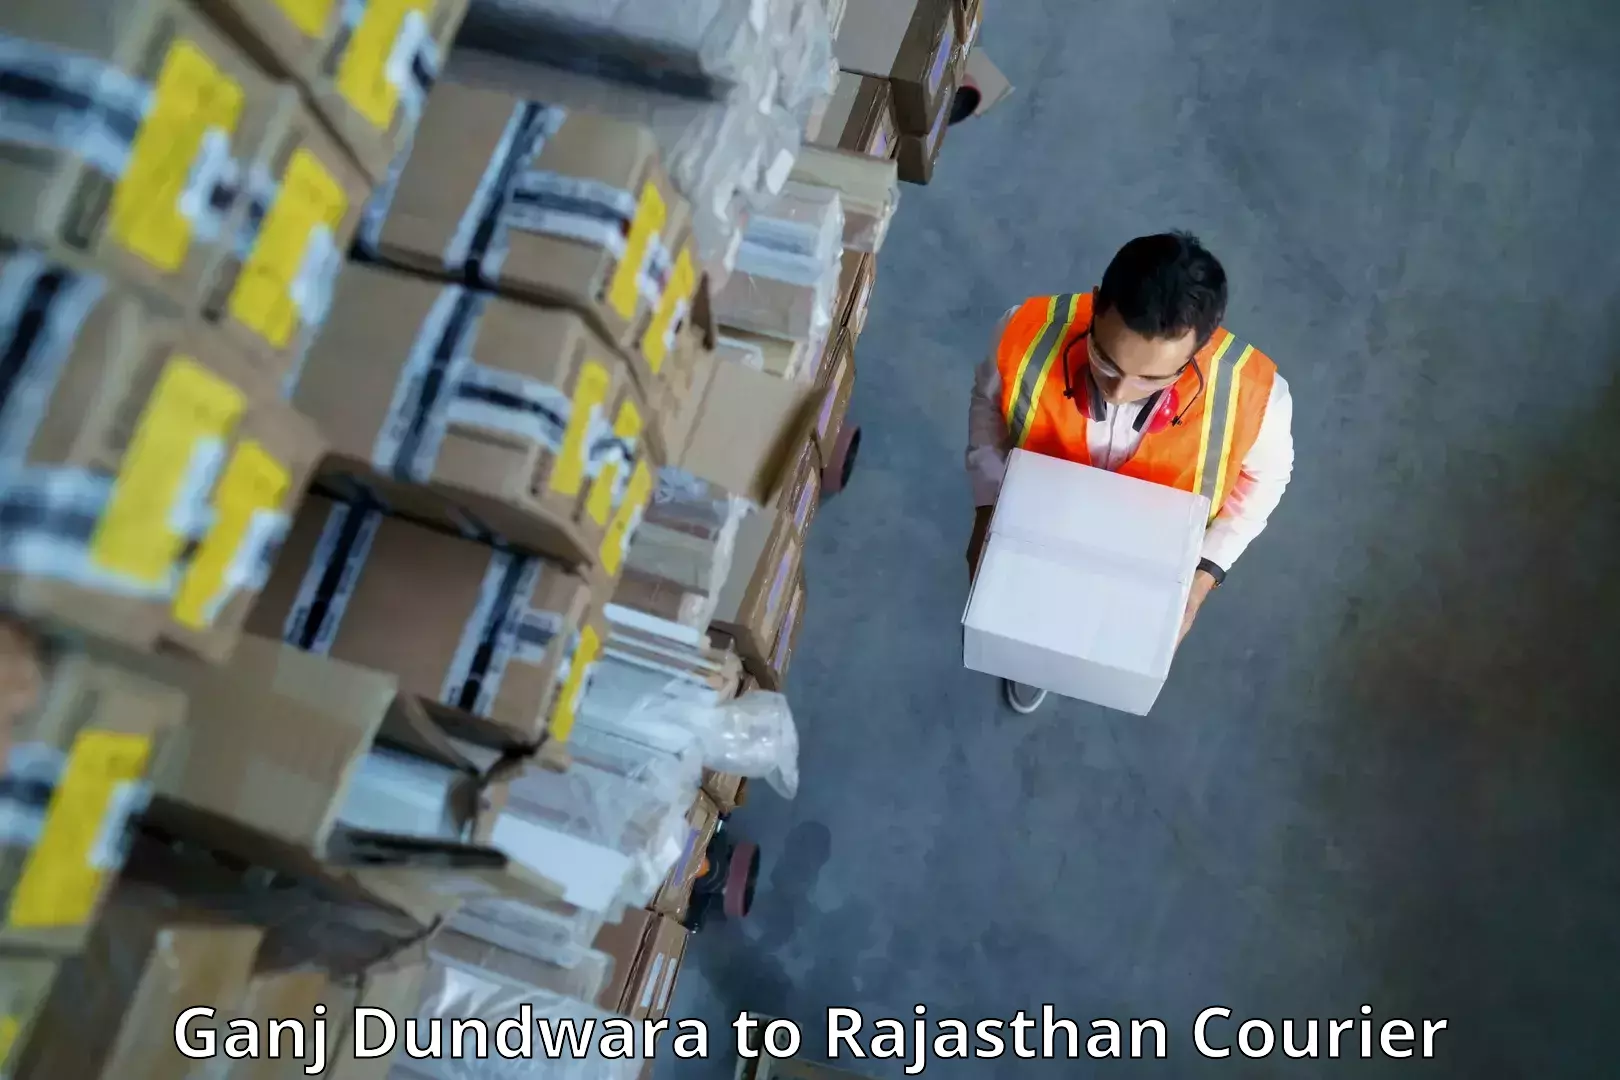 Budget-friendly shipping Ganj Dundwara to Rajasthan